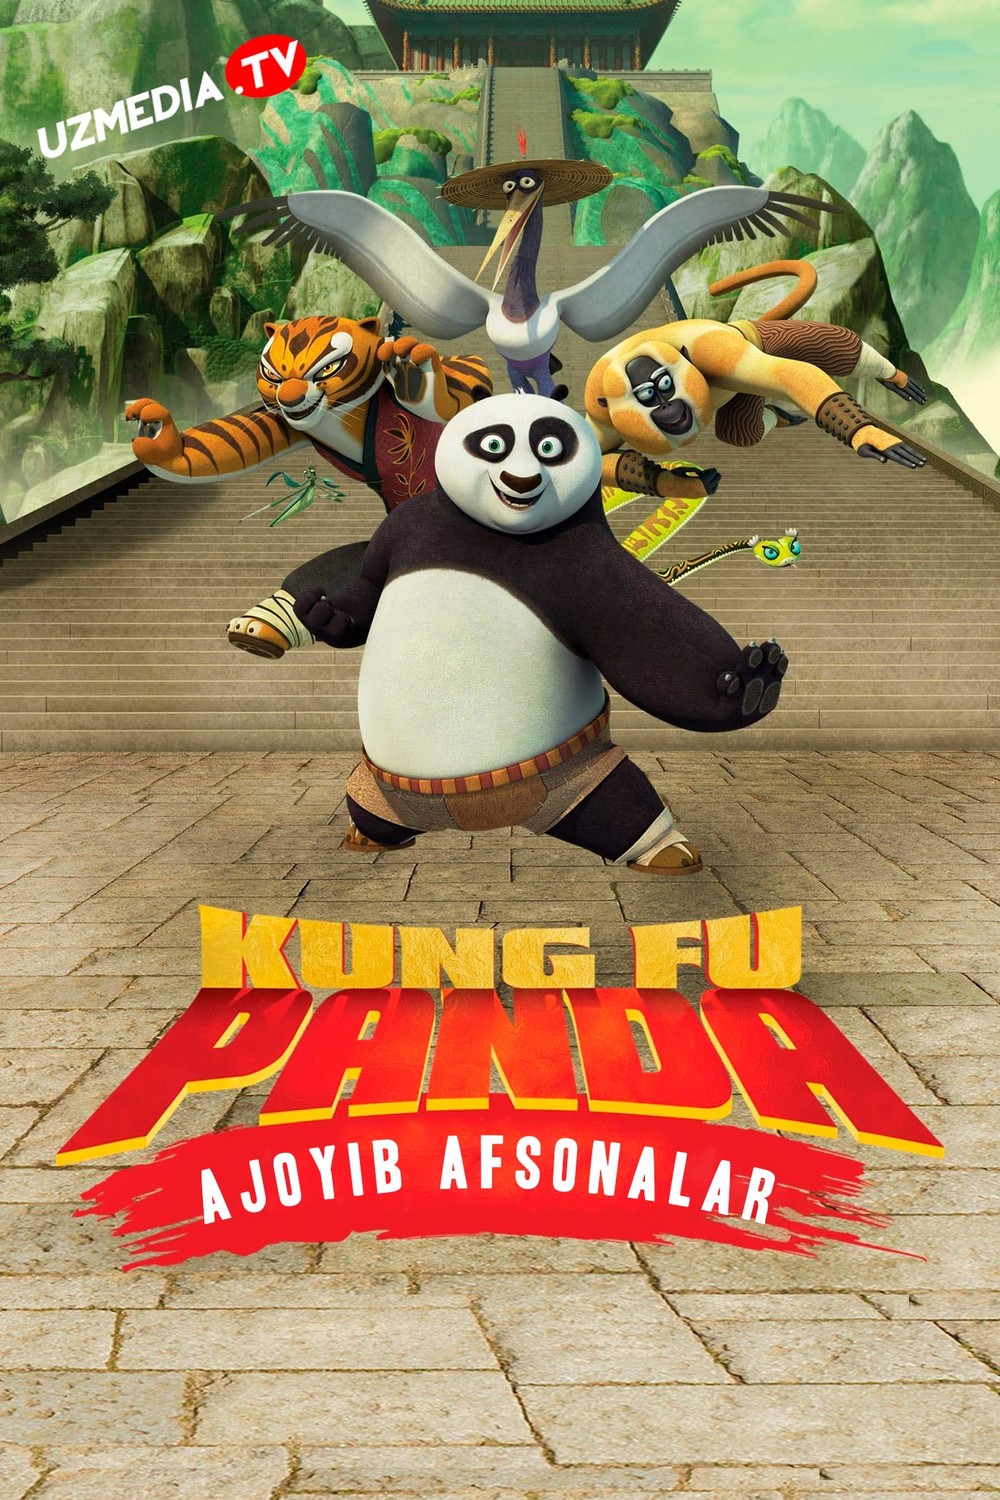 Kung-Fu Panda Multseriali Barcha qismlar Multfilm Uzbek tilida tarjima 2011 Full HD O'zbek tilida tas-ix skachat